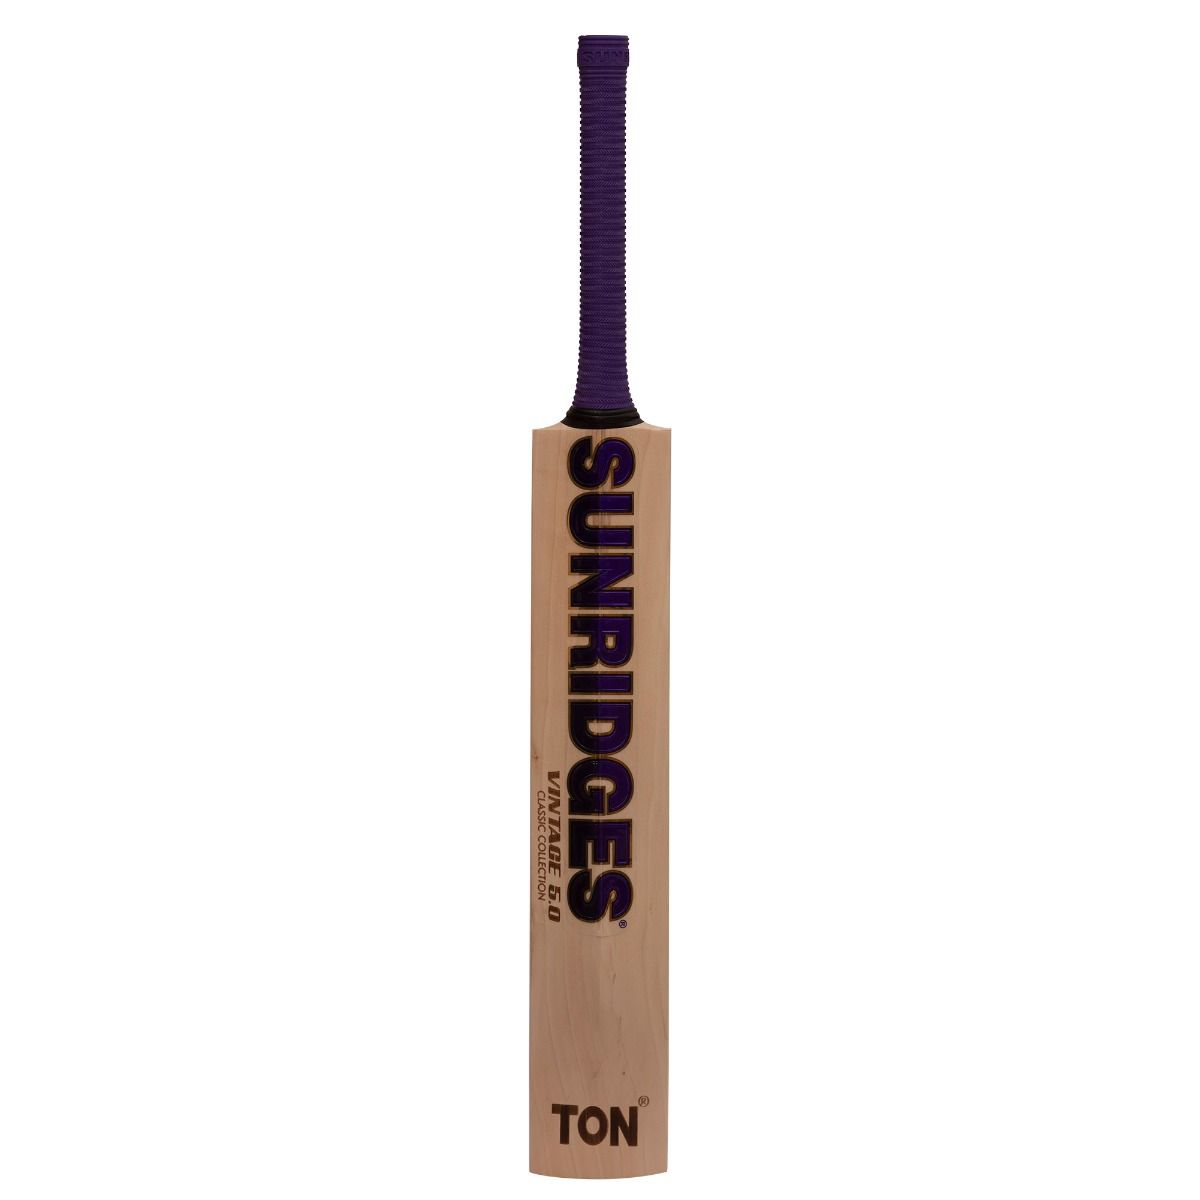 SS Cricket Bat Ton Vintage 5.0